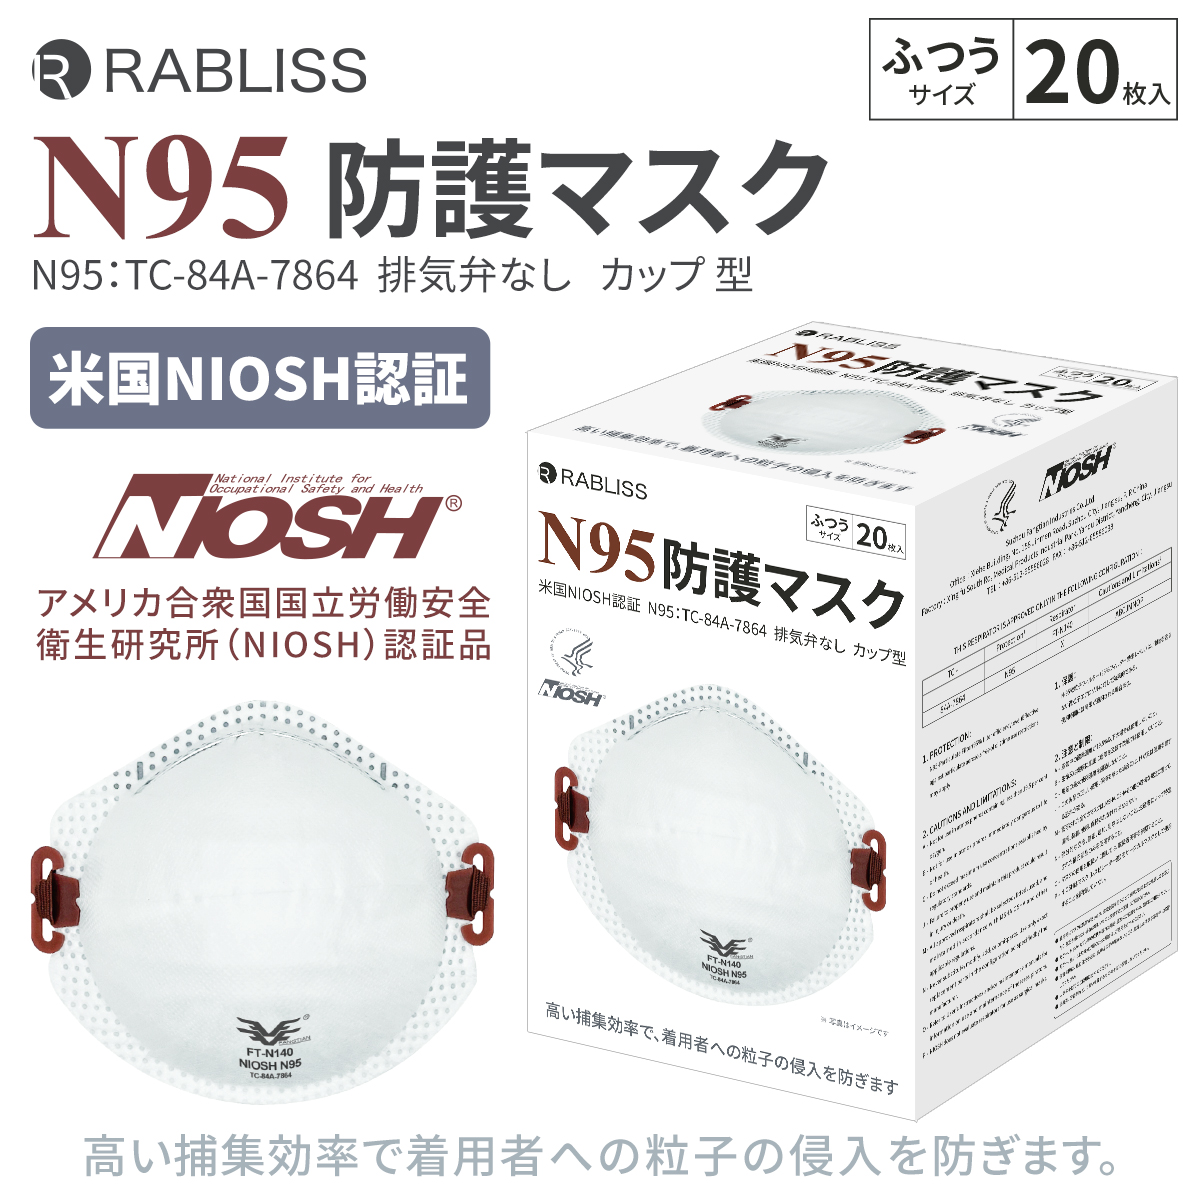  RABLISS N95 マスク カップ型 20枚入×18